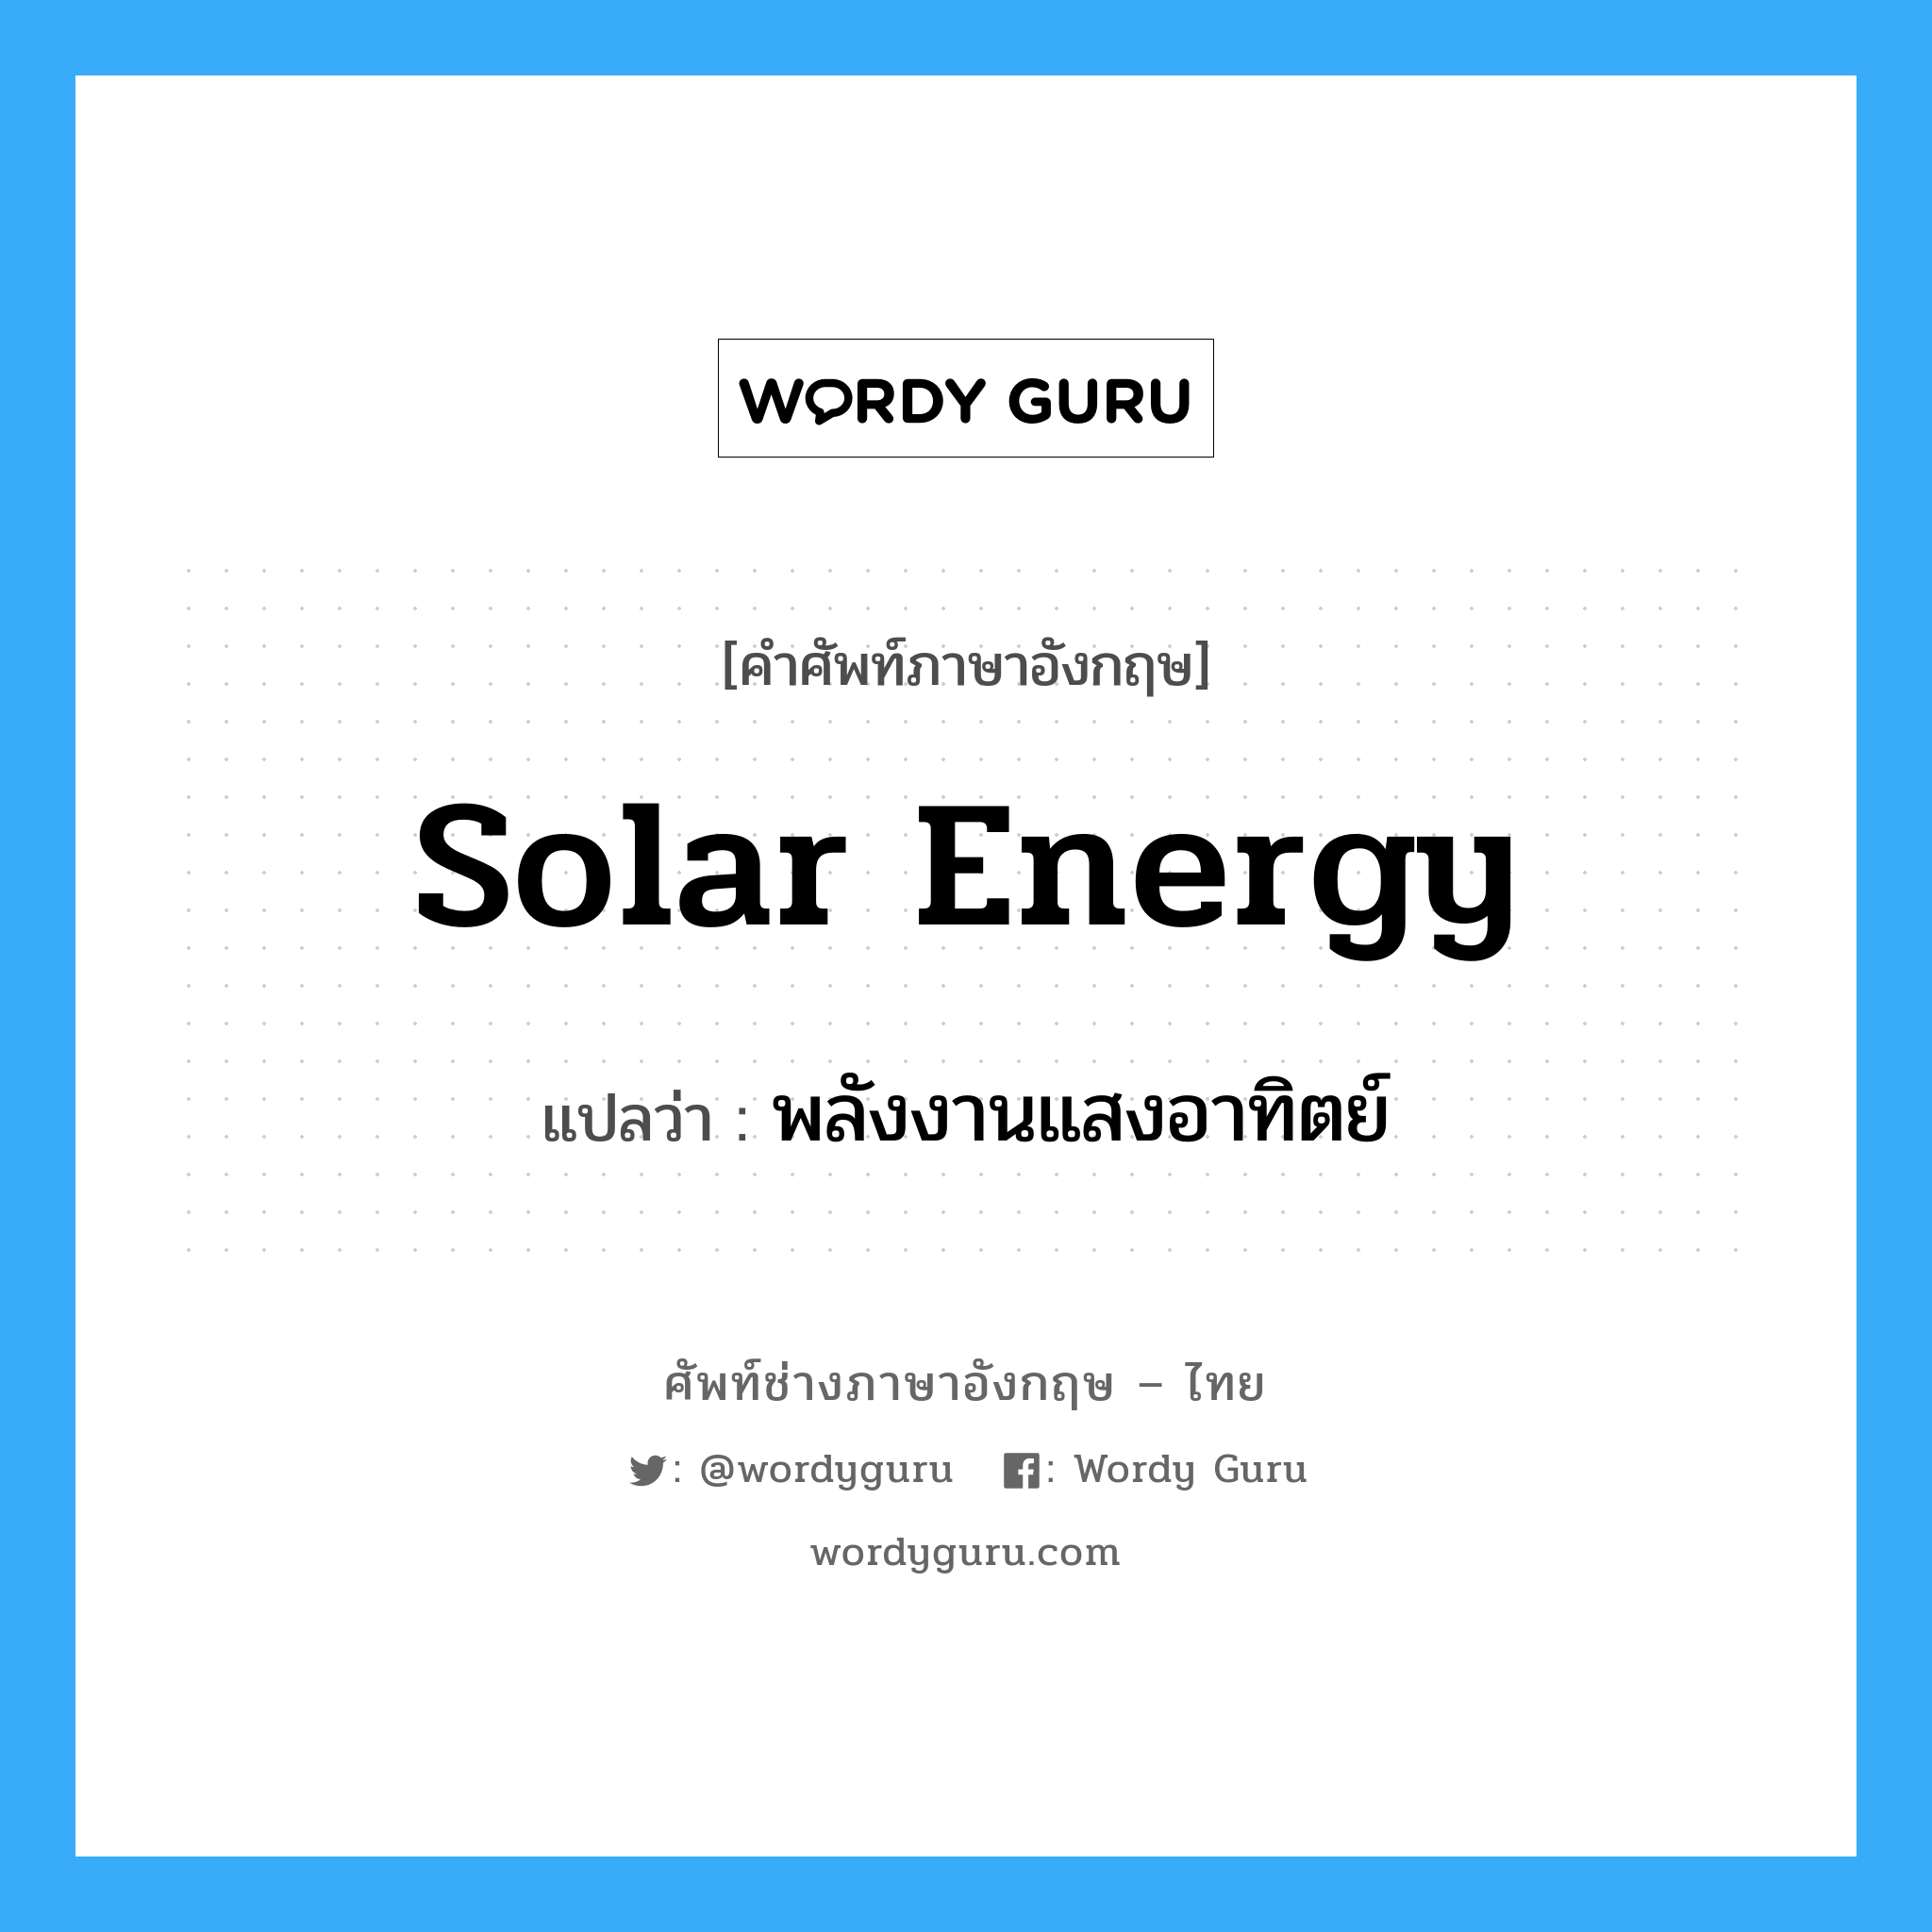 solar energy แปลว่า?, คำศัพท์ช่างภาษาอังกฤษ - ไทย solar energy คำศัพท์ภาษาอังกฤษ solar energy แปลว่า พลังงานแสงอาทิตย์